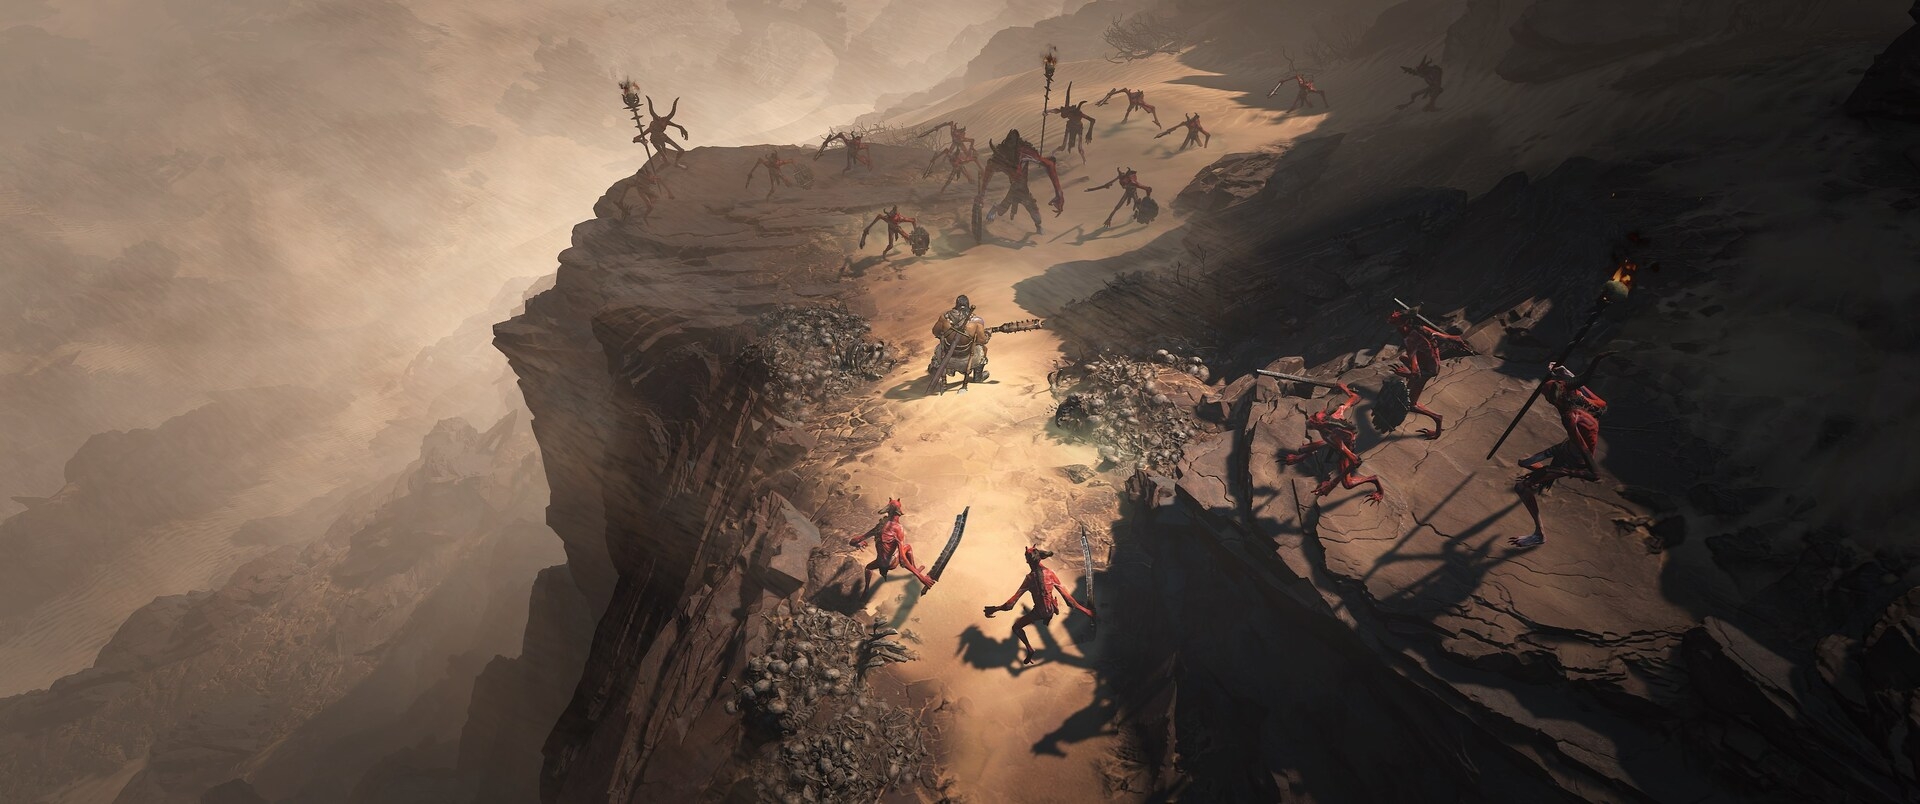 Скриншот из игры Diablo IV под номером 9